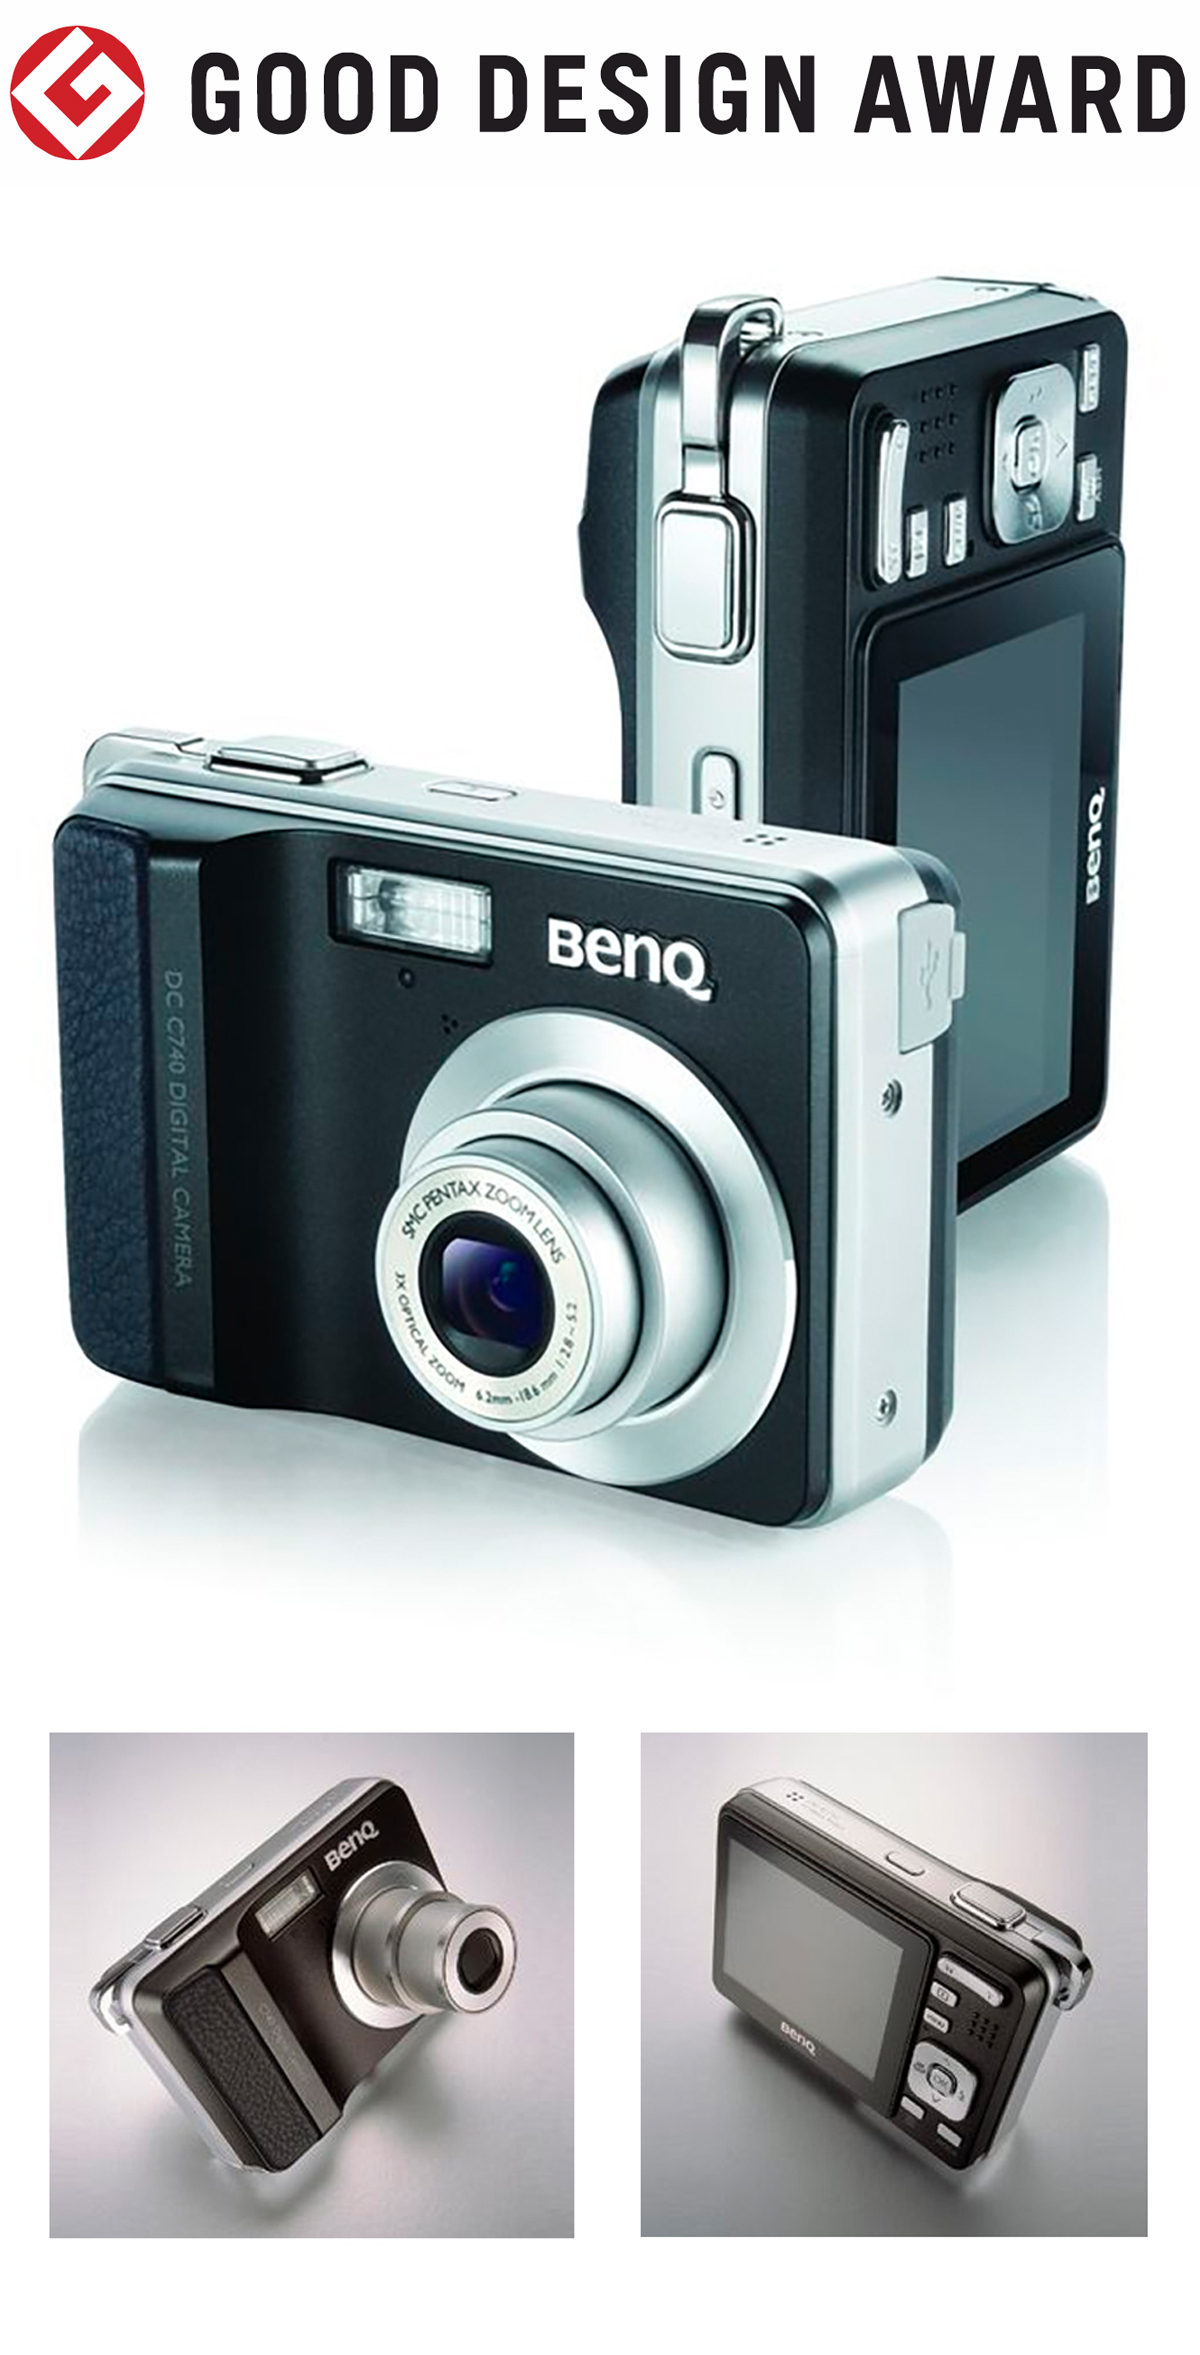 【日本】明基BenQ数码相机DC C740获颁2006年度G-Mark设计大奖（GOOD DESIGN AWARD 2006）